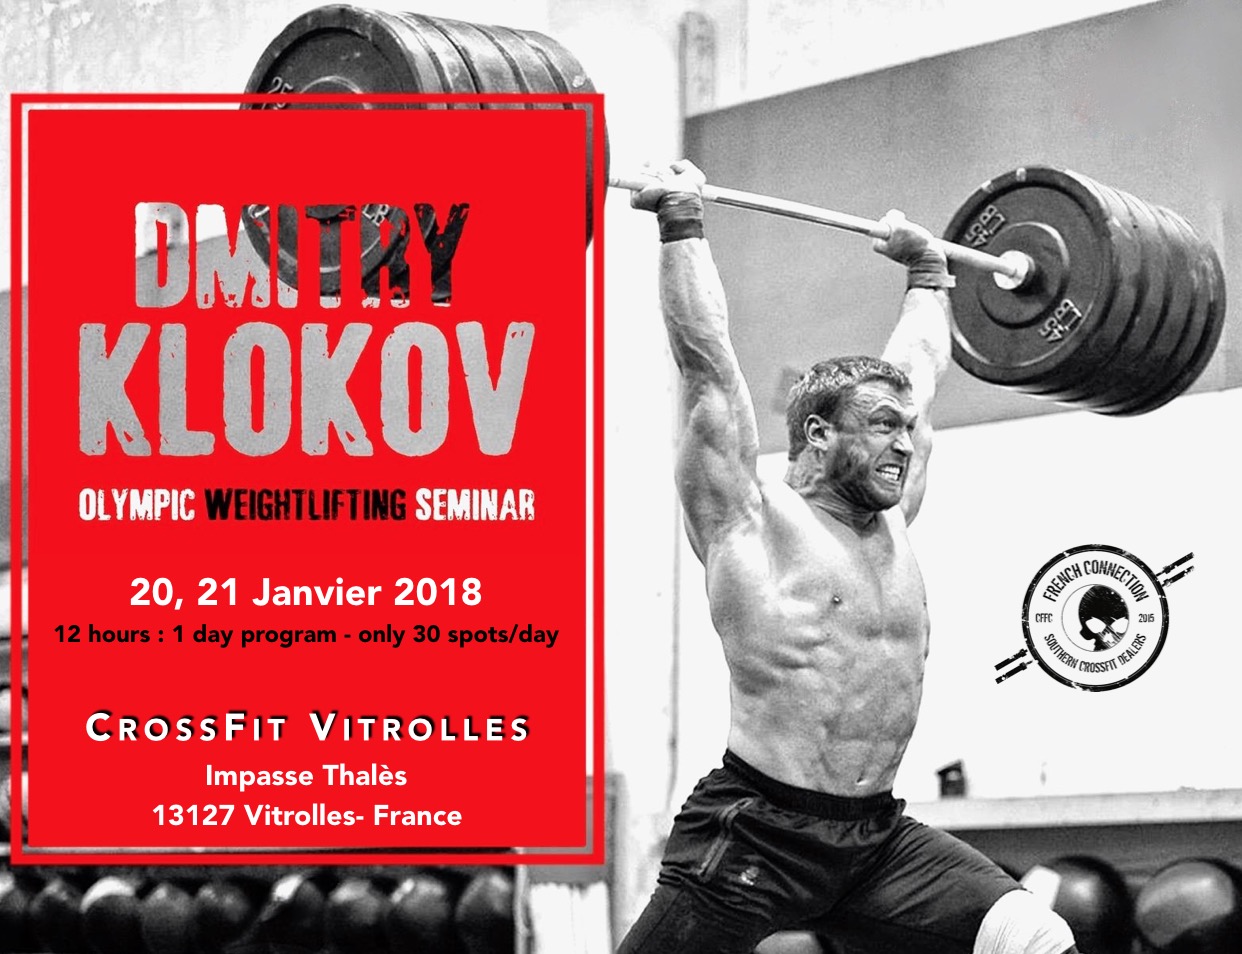 Dmitry Klokov chez CrossFit French Connection